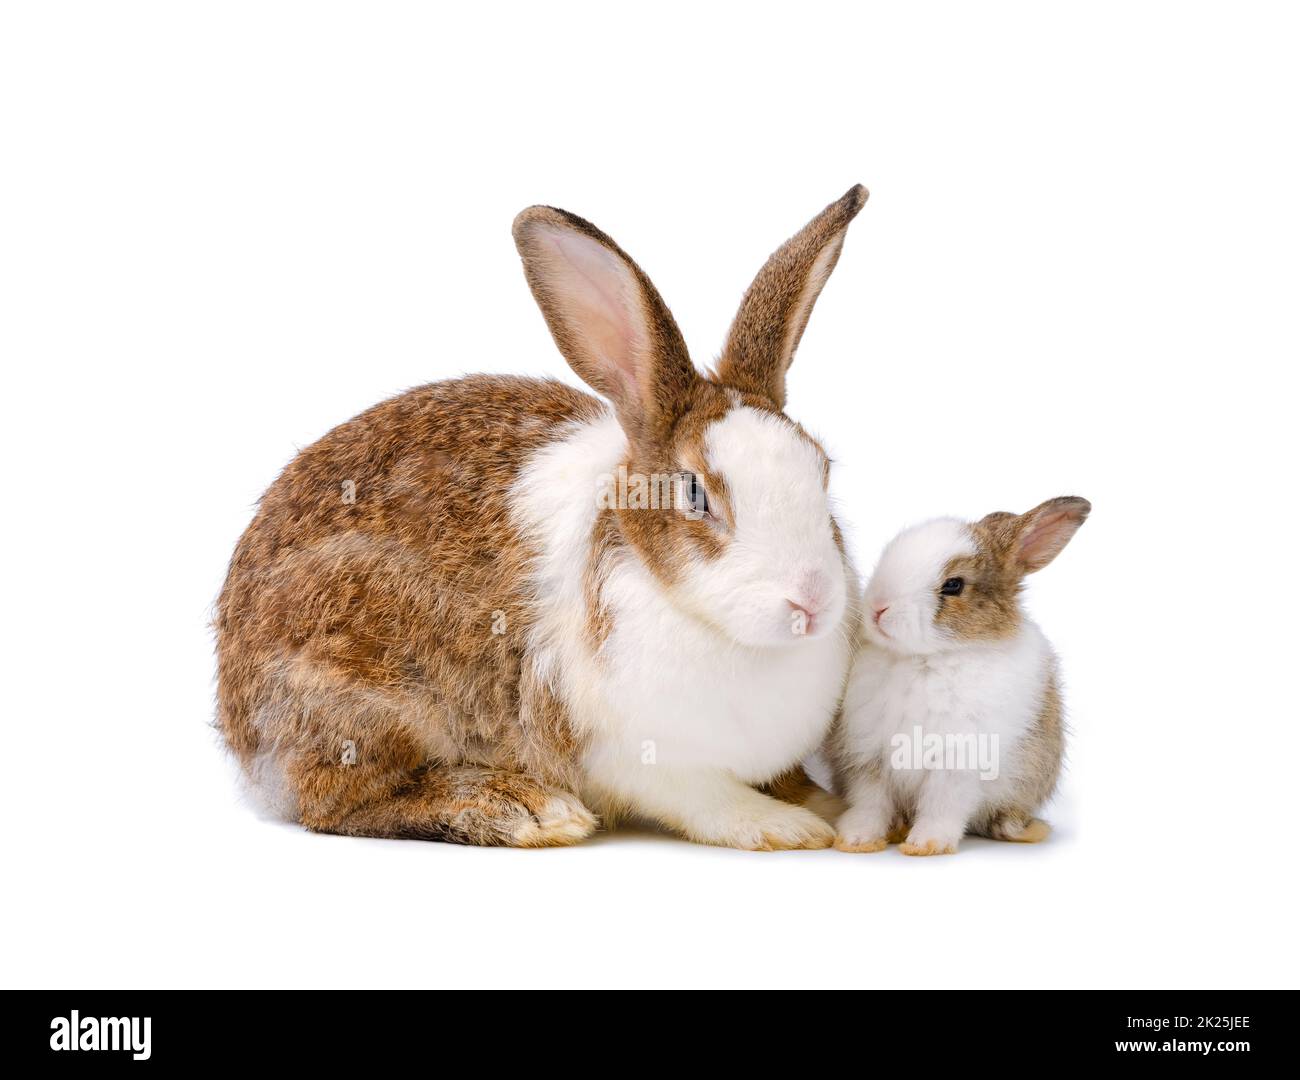 Adorable conejo madre y conejo bebé sobre fondo blanco. Foto de stock